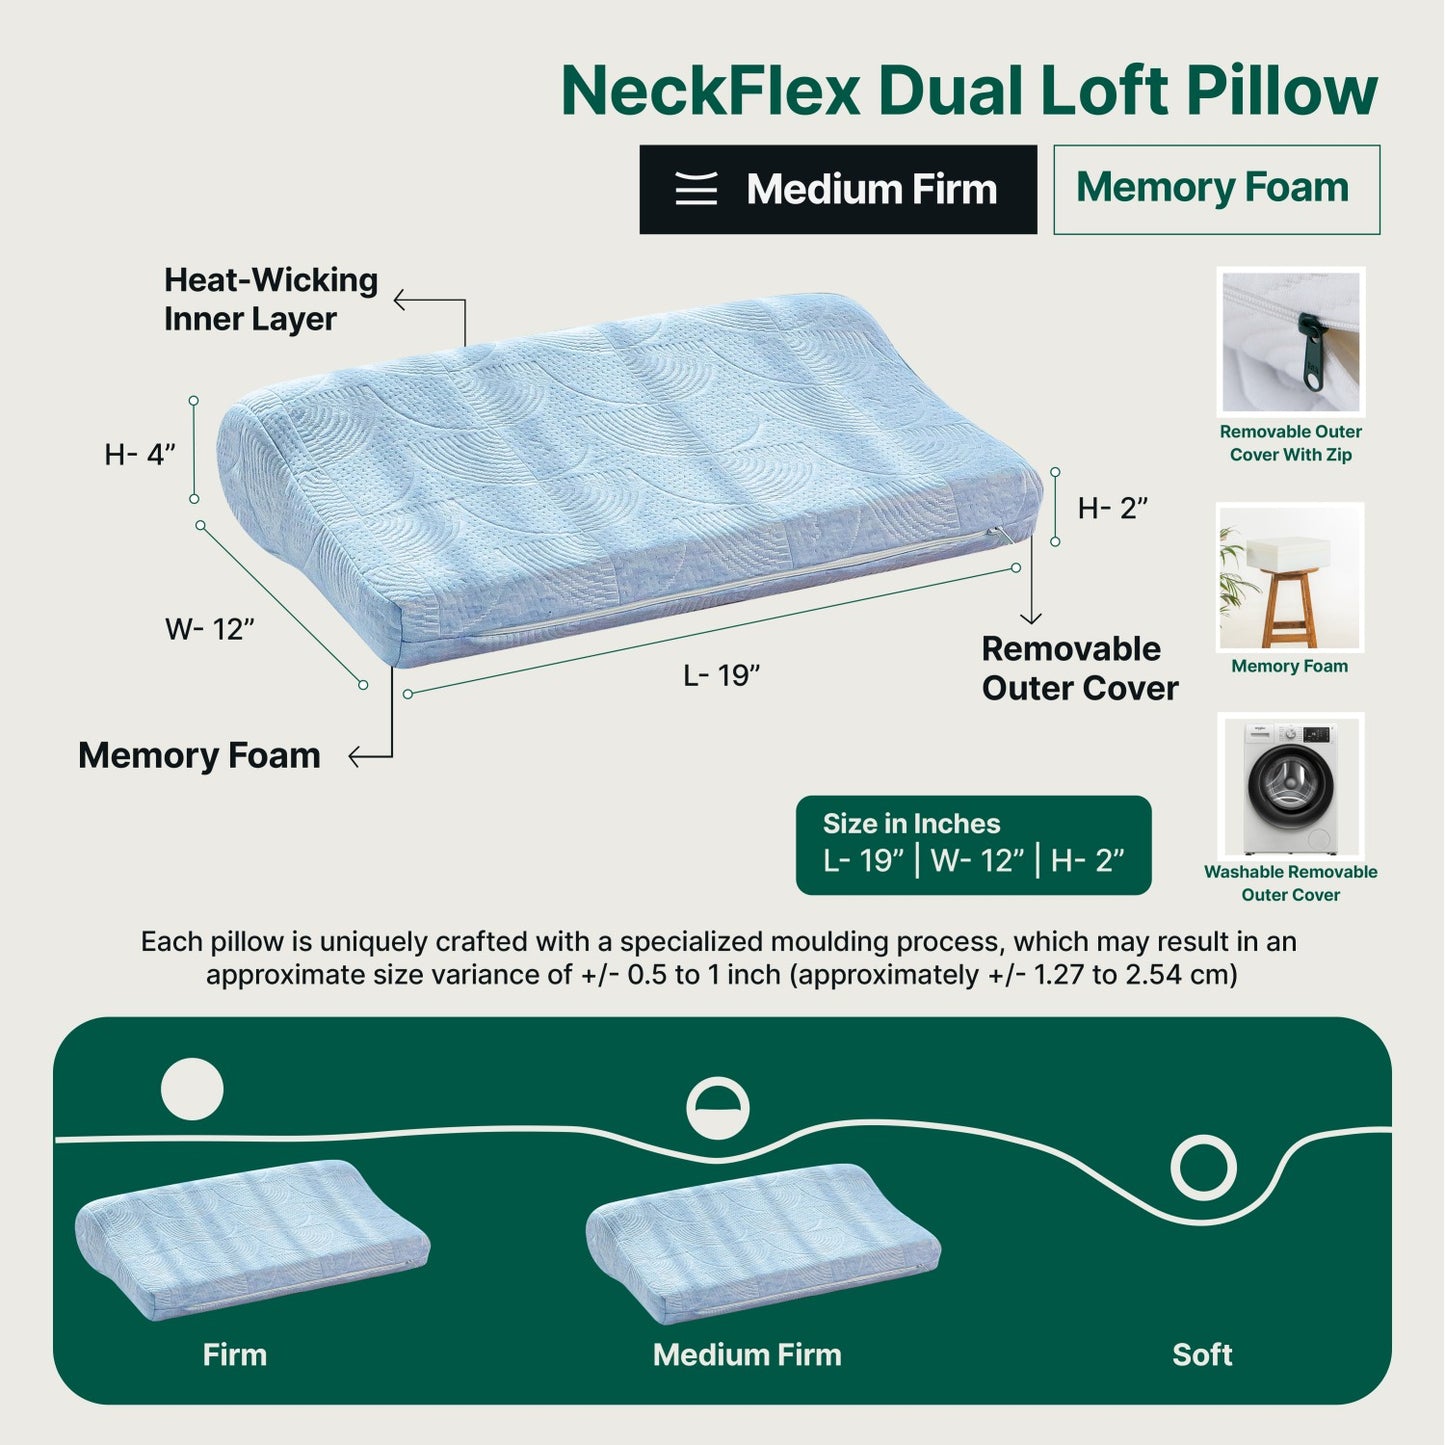 NeckFlex Dual Loft Pillow